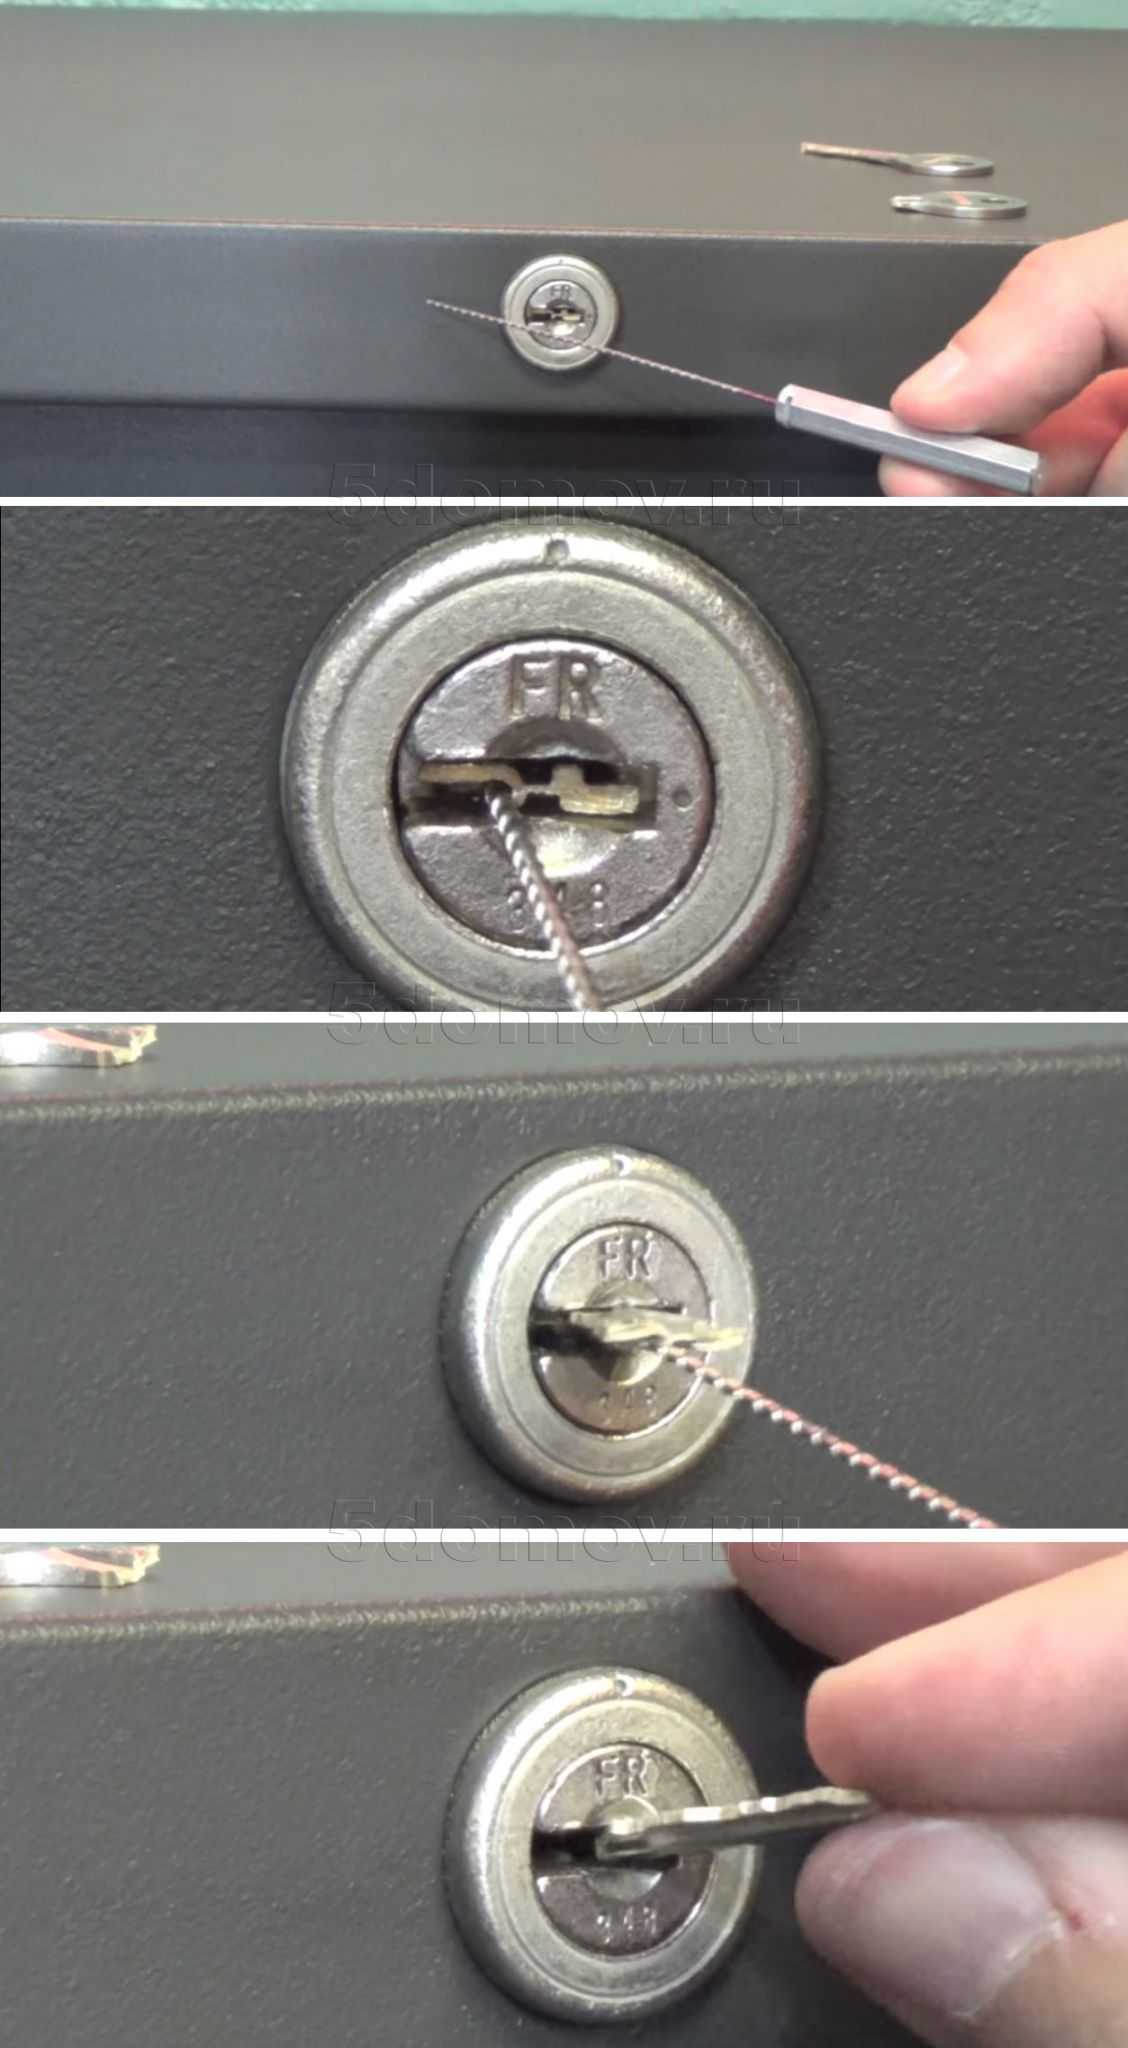 Сломался ключ в личинке замка: что делать и как вытащить обломанный ключ, если он застрял?